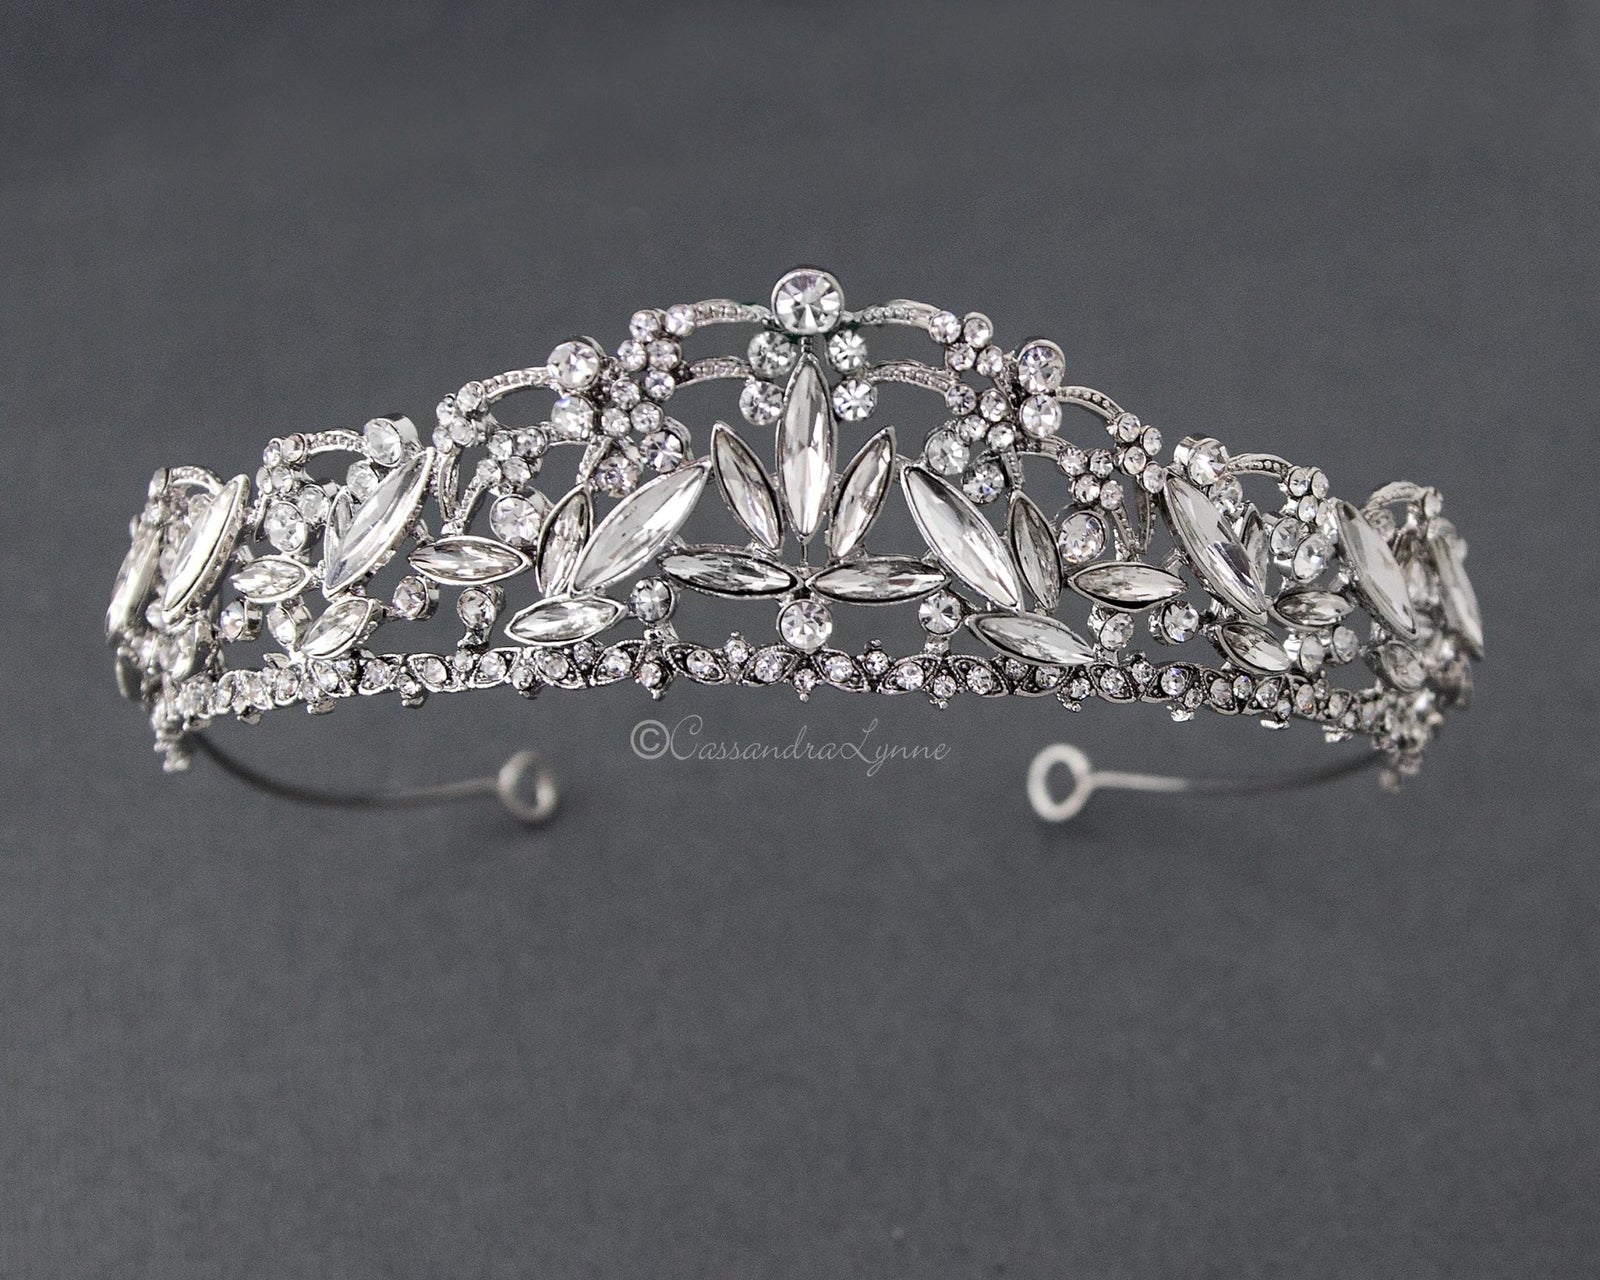 Dahlia Antique Silver Wedding Tiara